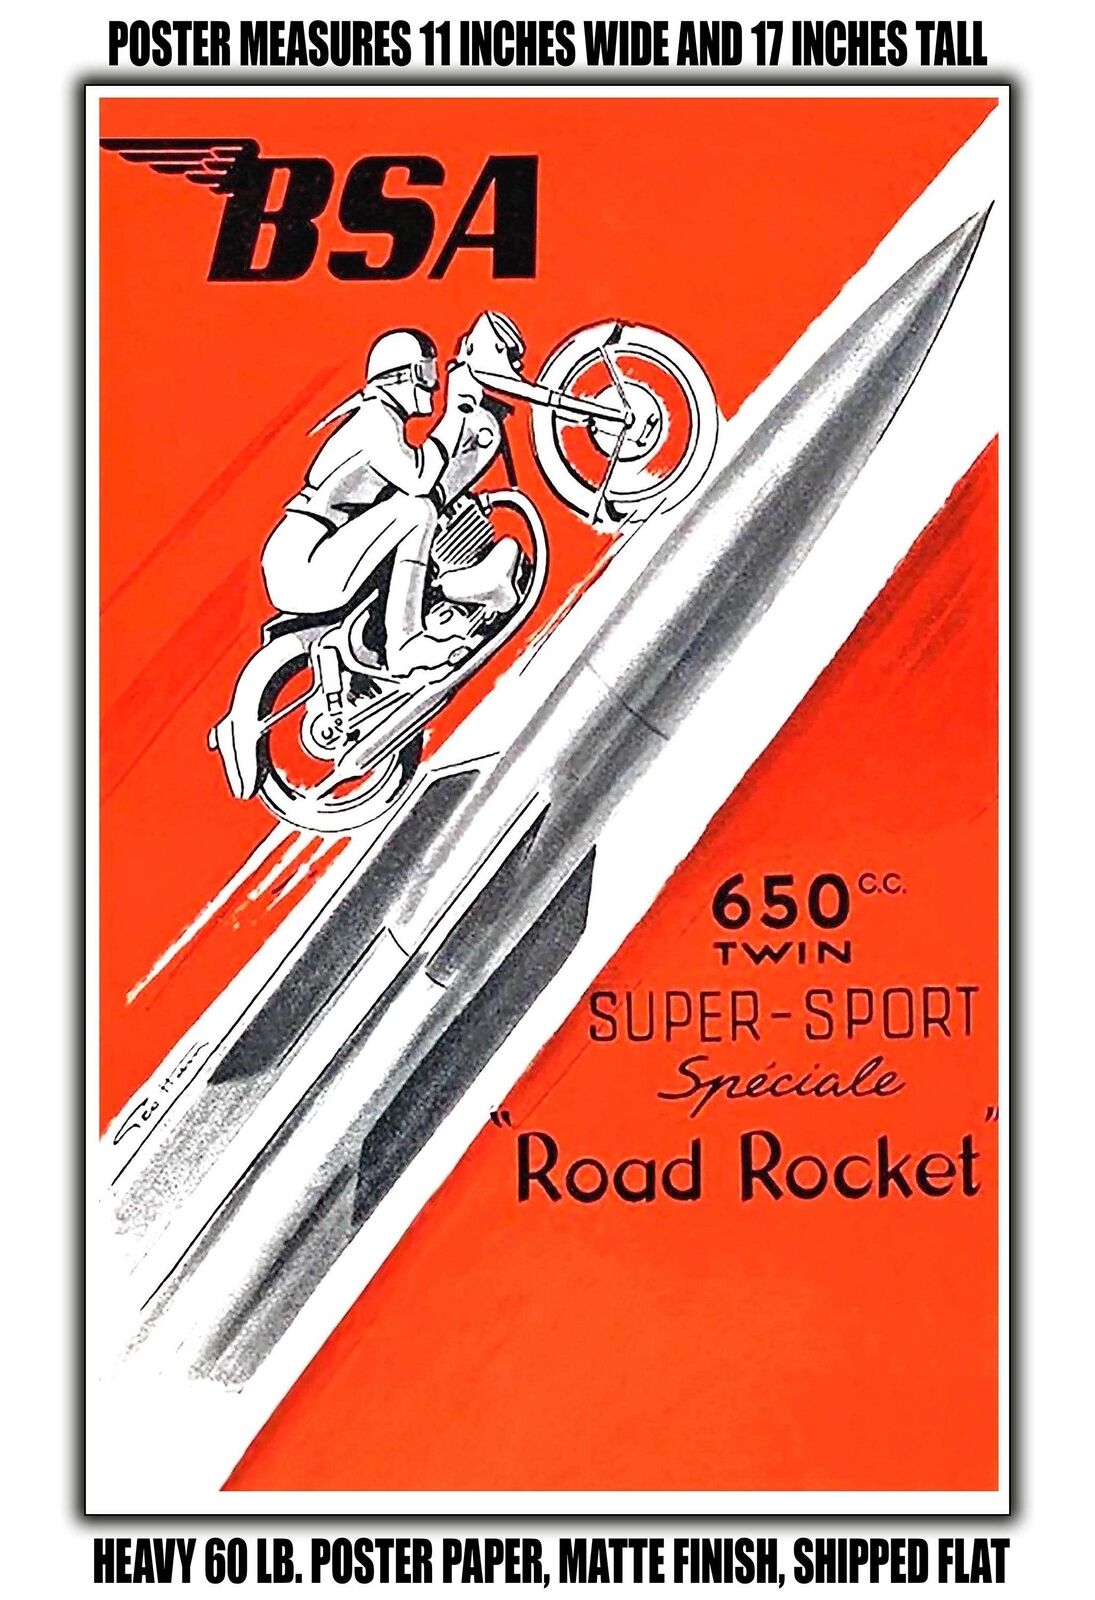 11x17 POSTER - 1957 BSA 650 Cc Twin Super Sport Speciale Road Rocket